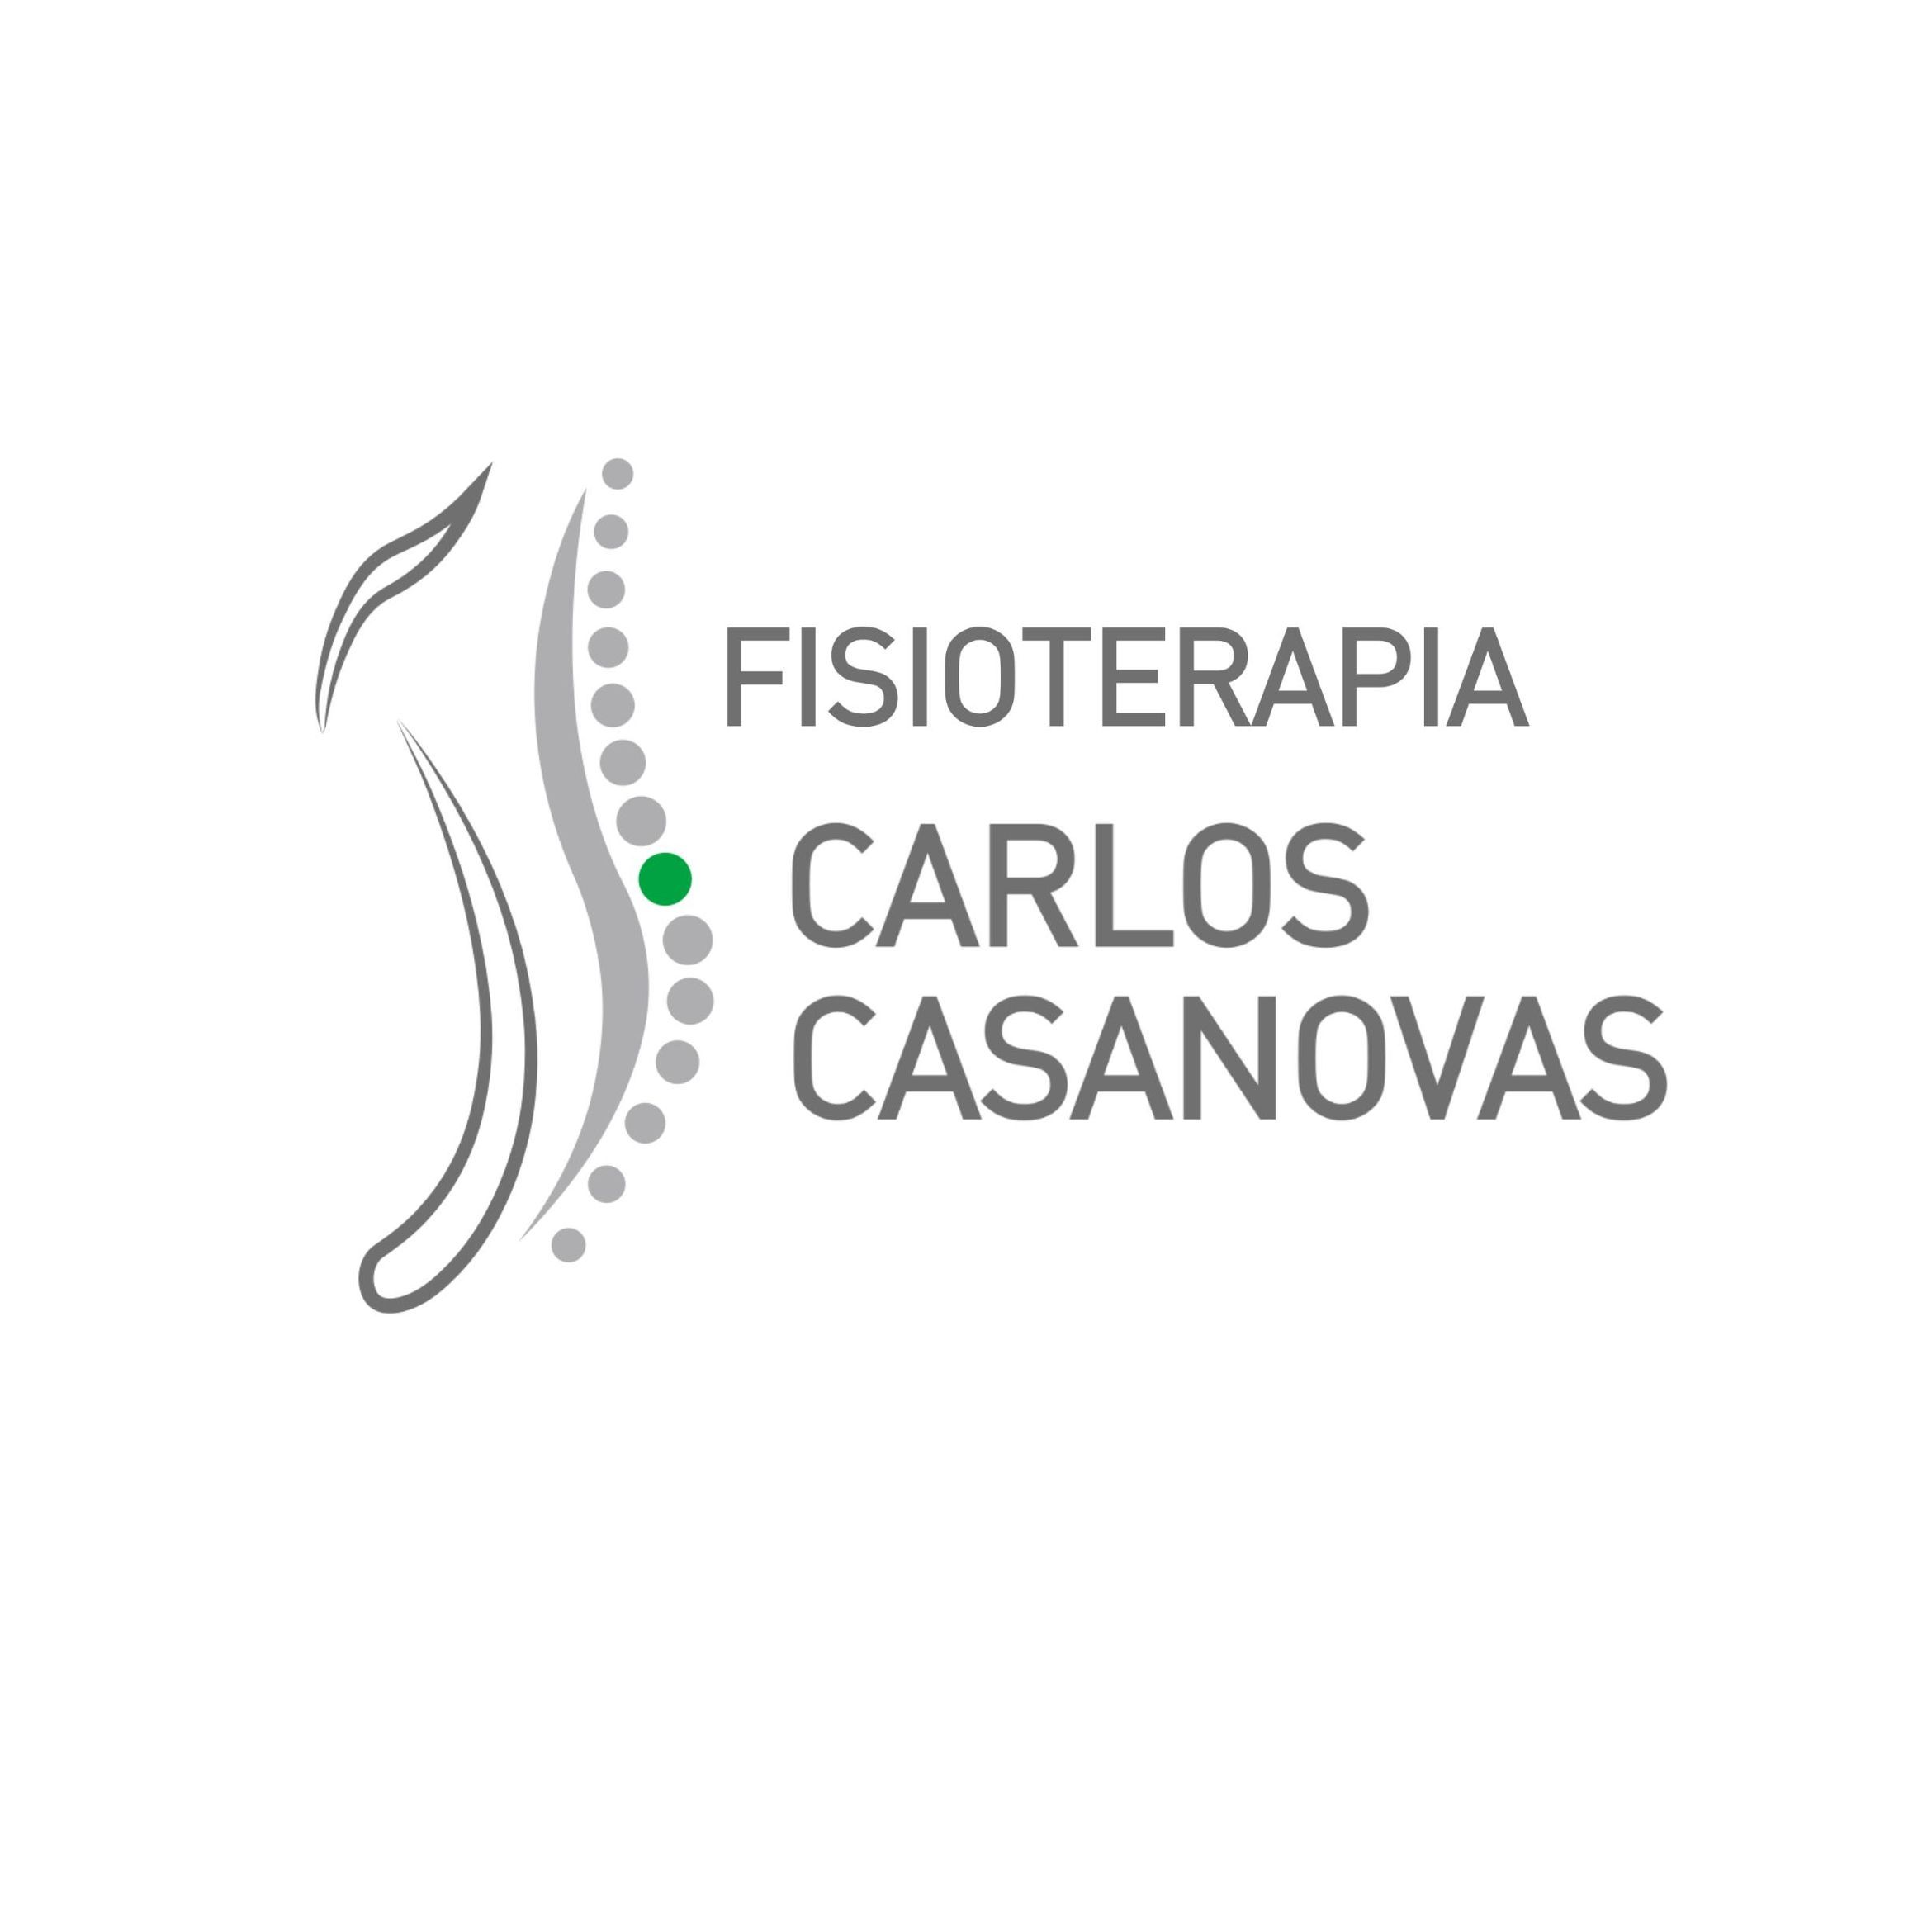 Fisioterapia Carlos Casanovas, Calle Frutos Baeza, 1, Bajo, 30004, Murcia